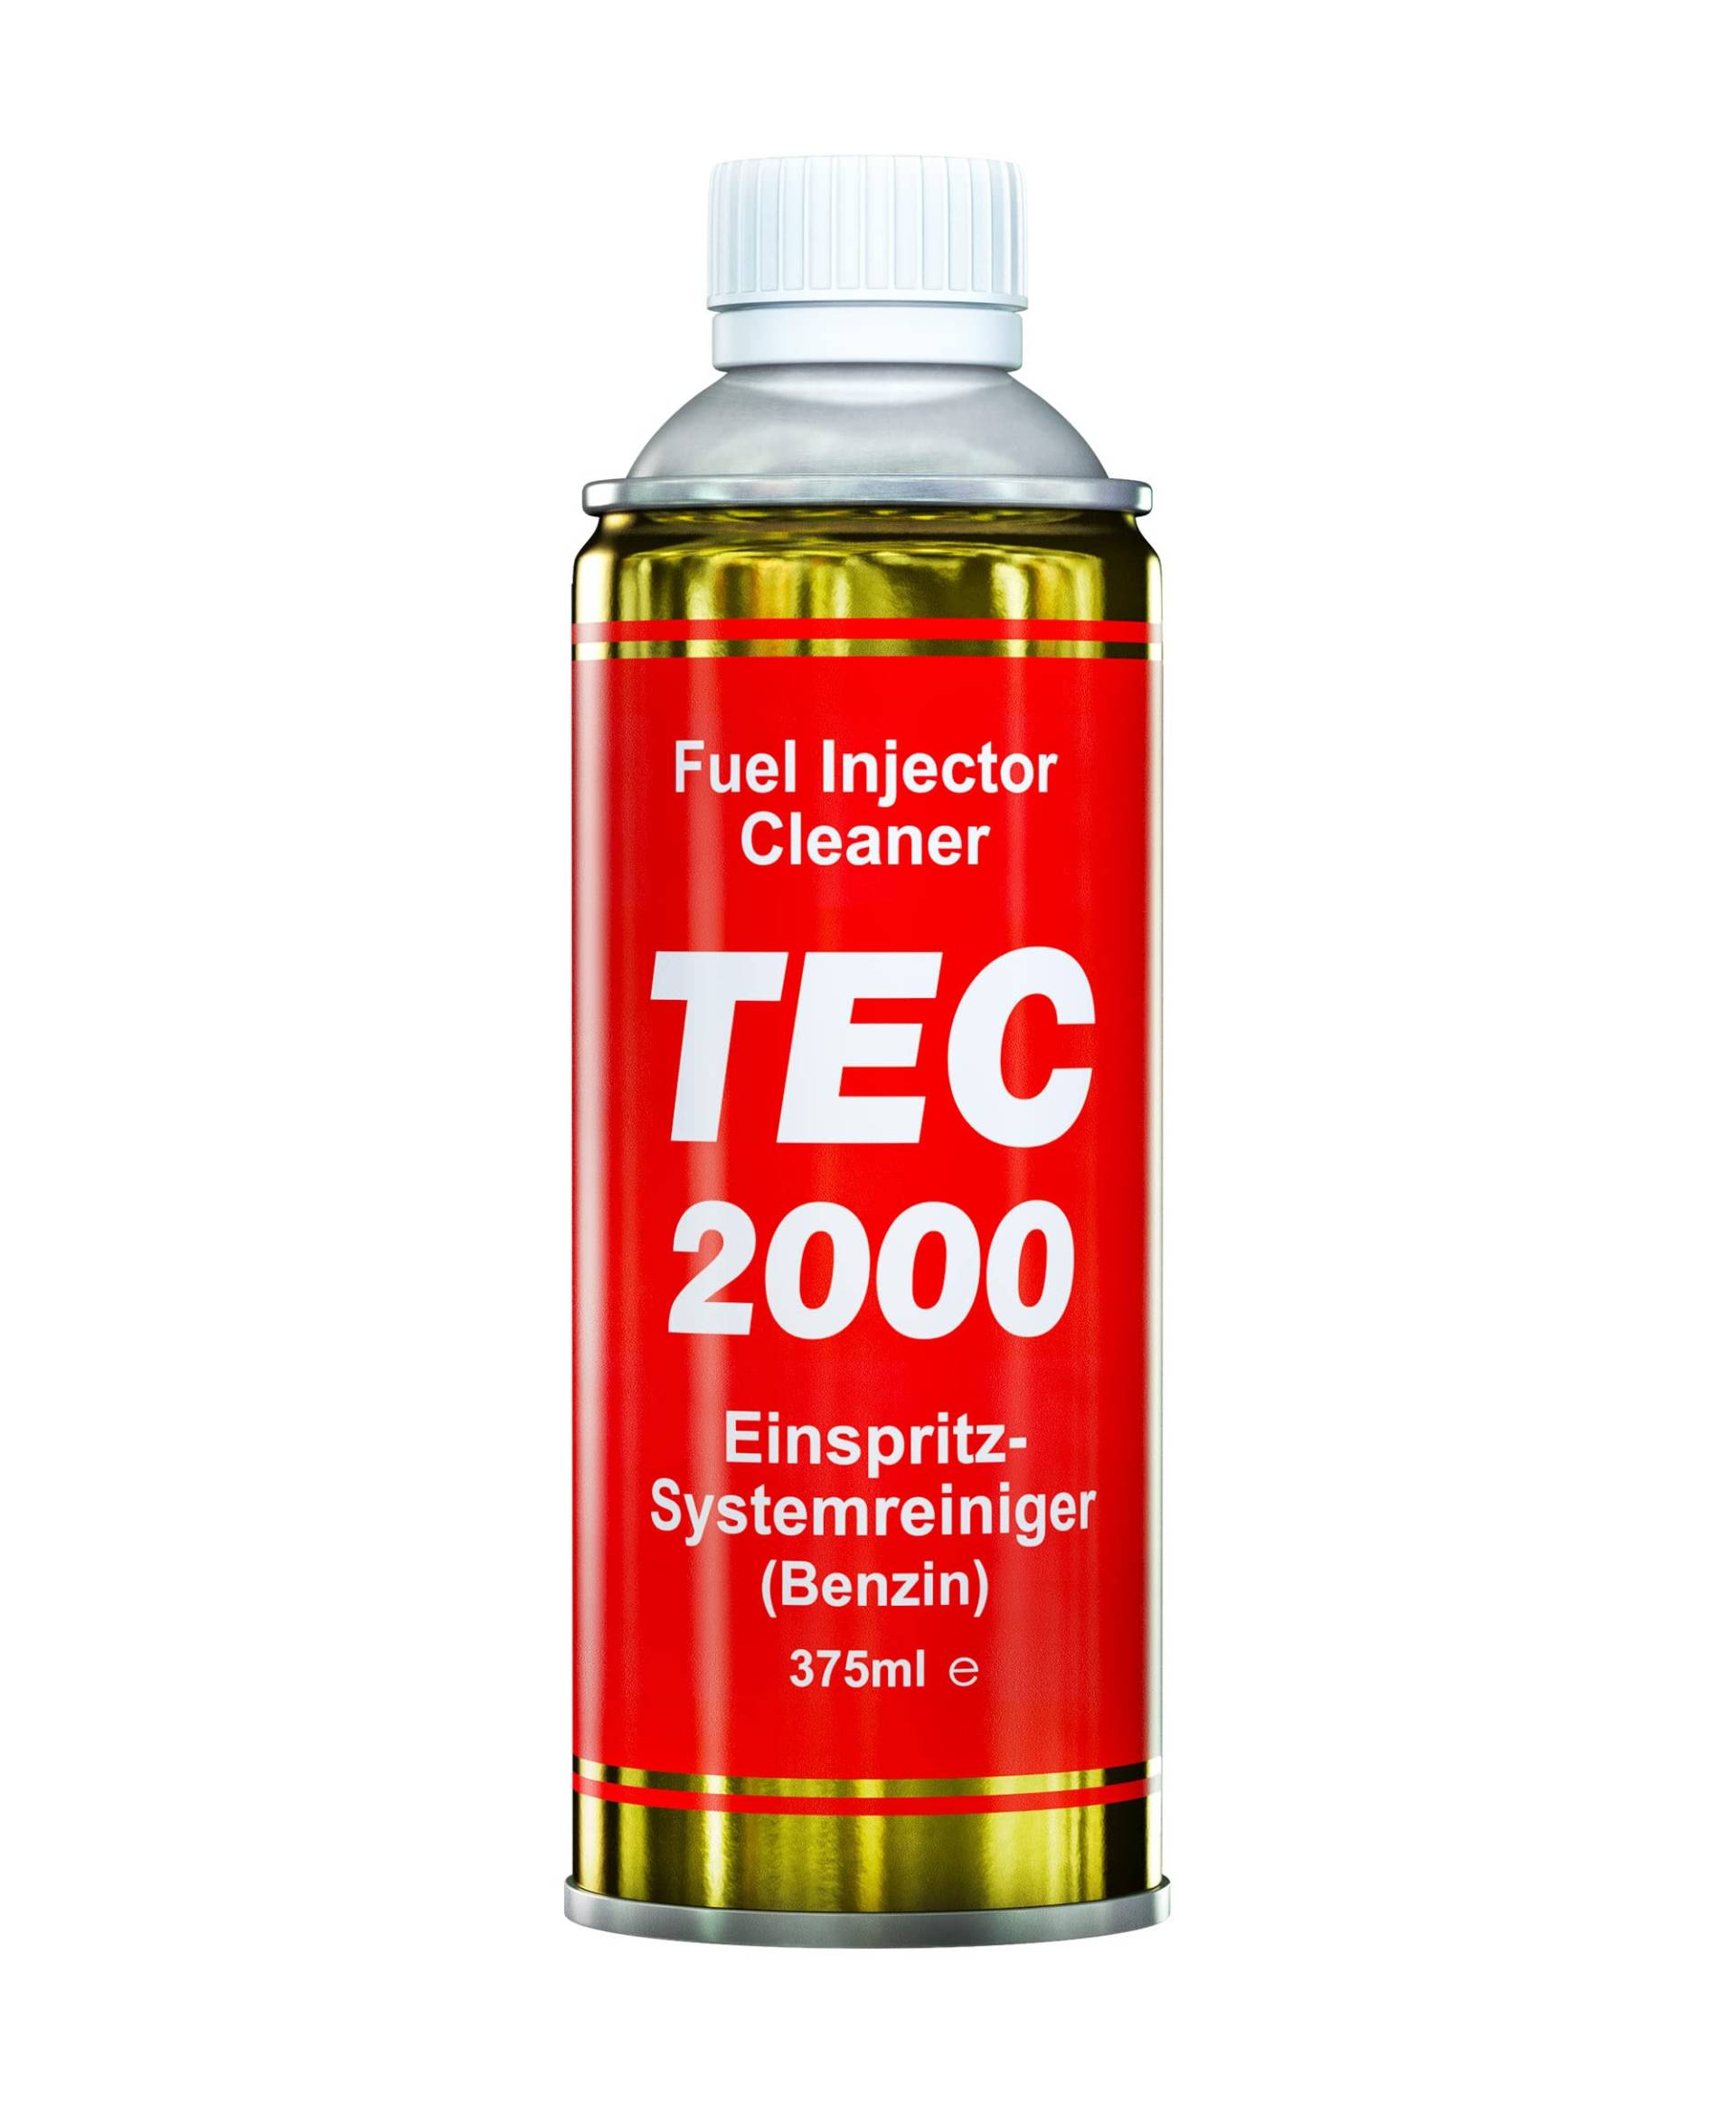 TEC 2000 Motorreiniger - Fuel Injector Cleaner Systemreiniger Benzinzusatz 375ml - Kraftstoffadditiv zur Systemreinigung von Injektoren - Reinigung der Injektoren Einspritzudüsen - Benzinreiniger von TEC 2000